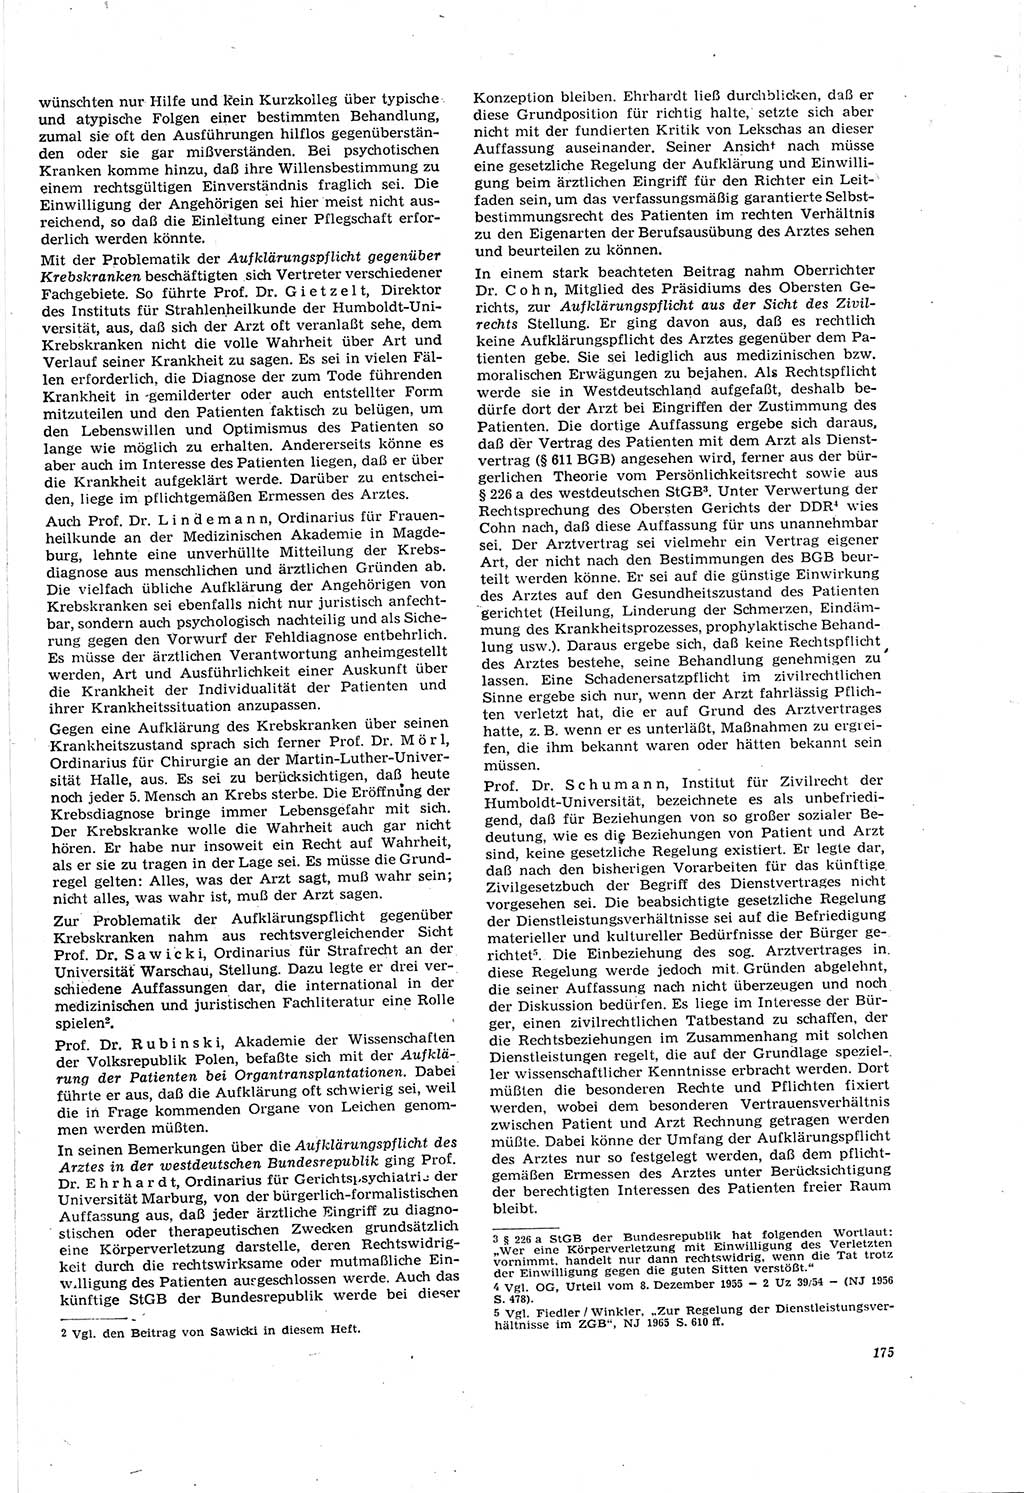 Neue Justiz (NJ), Zeitschrift für Recht und Rechtswissenschaft [Deutsche Demokratische Republik (DDR)], 20. Jahrgang 1966, Seite 175 (NJ DDR 1966, S. 175)